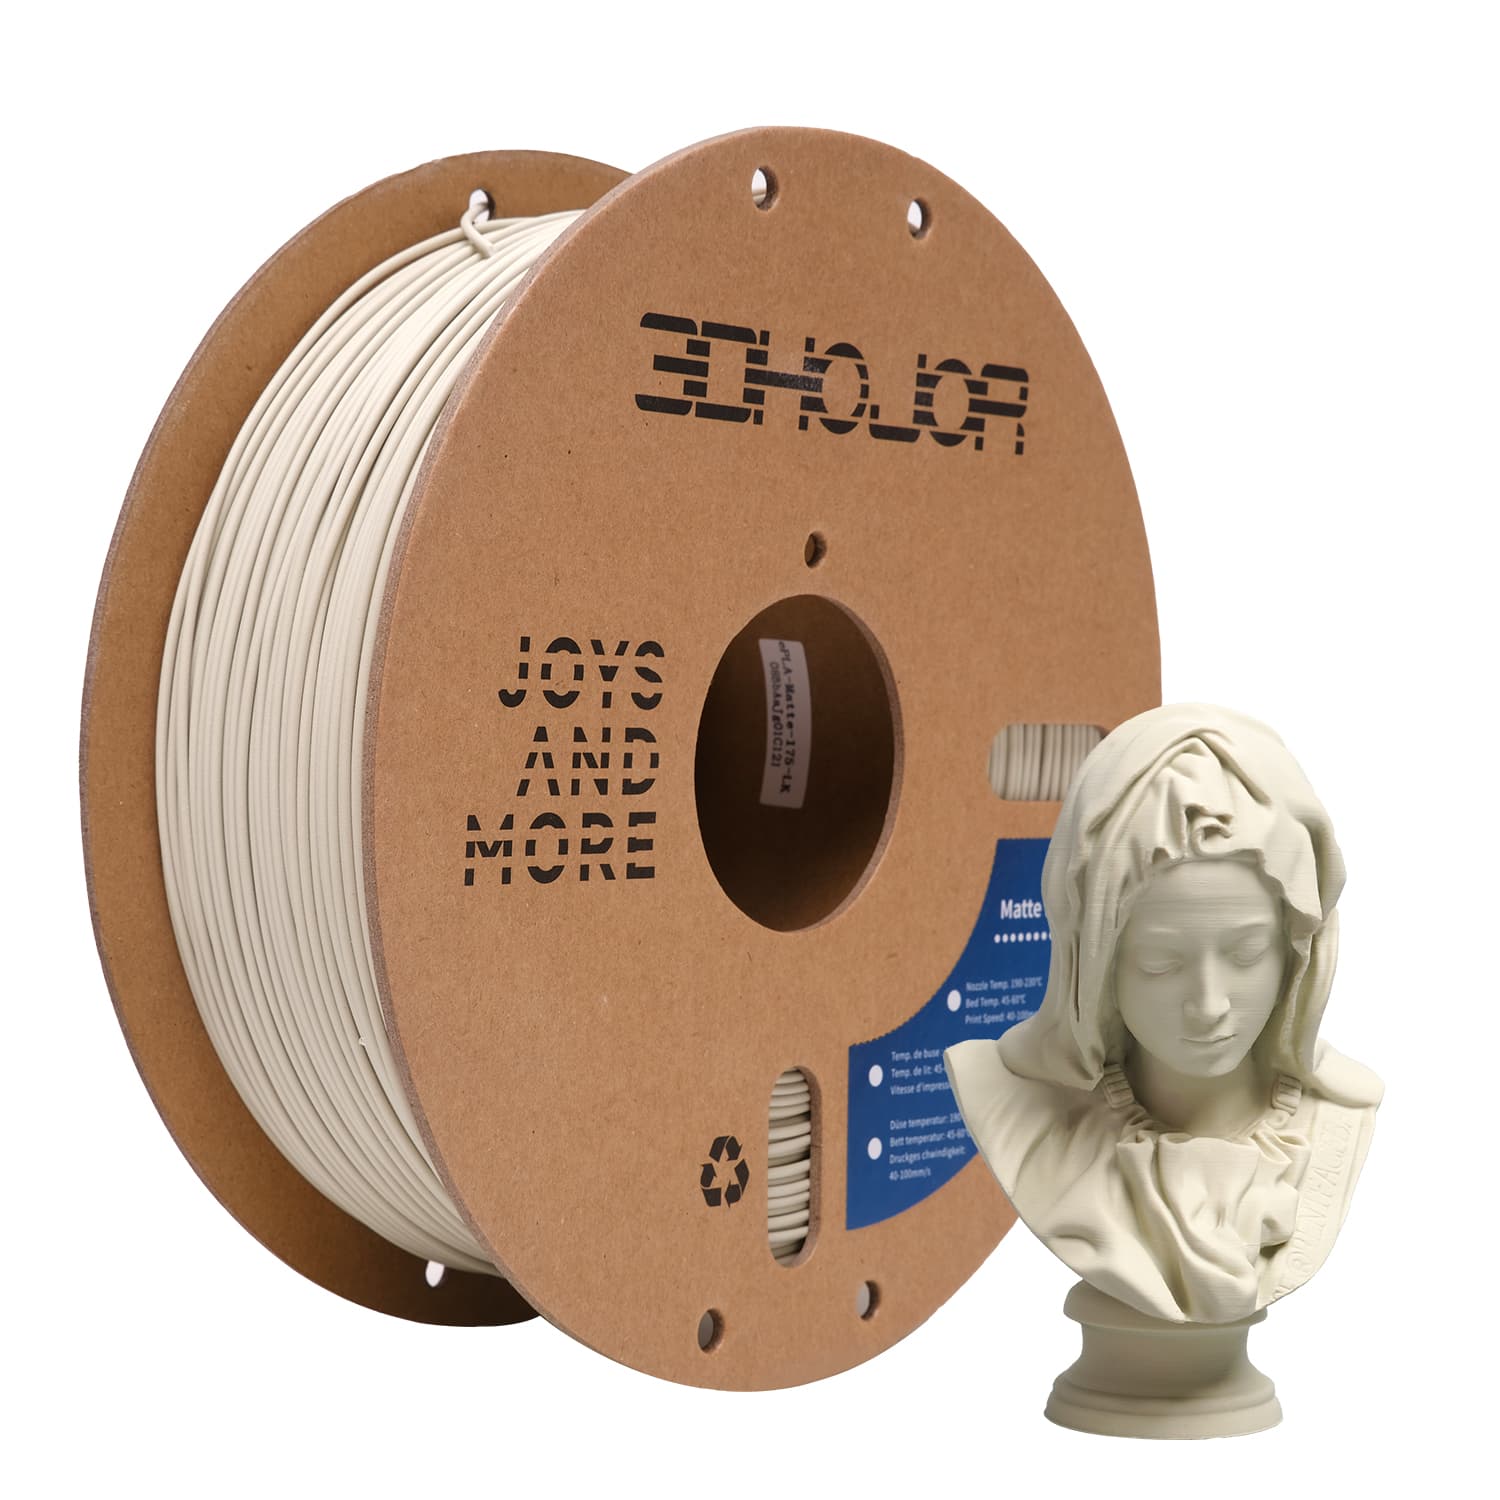 3DHoJor Matte PLA Filament 1.75mm Light Khaki, PLA 3D Printer Filament, 1kg Spool (2.2lbs) PLA Filament